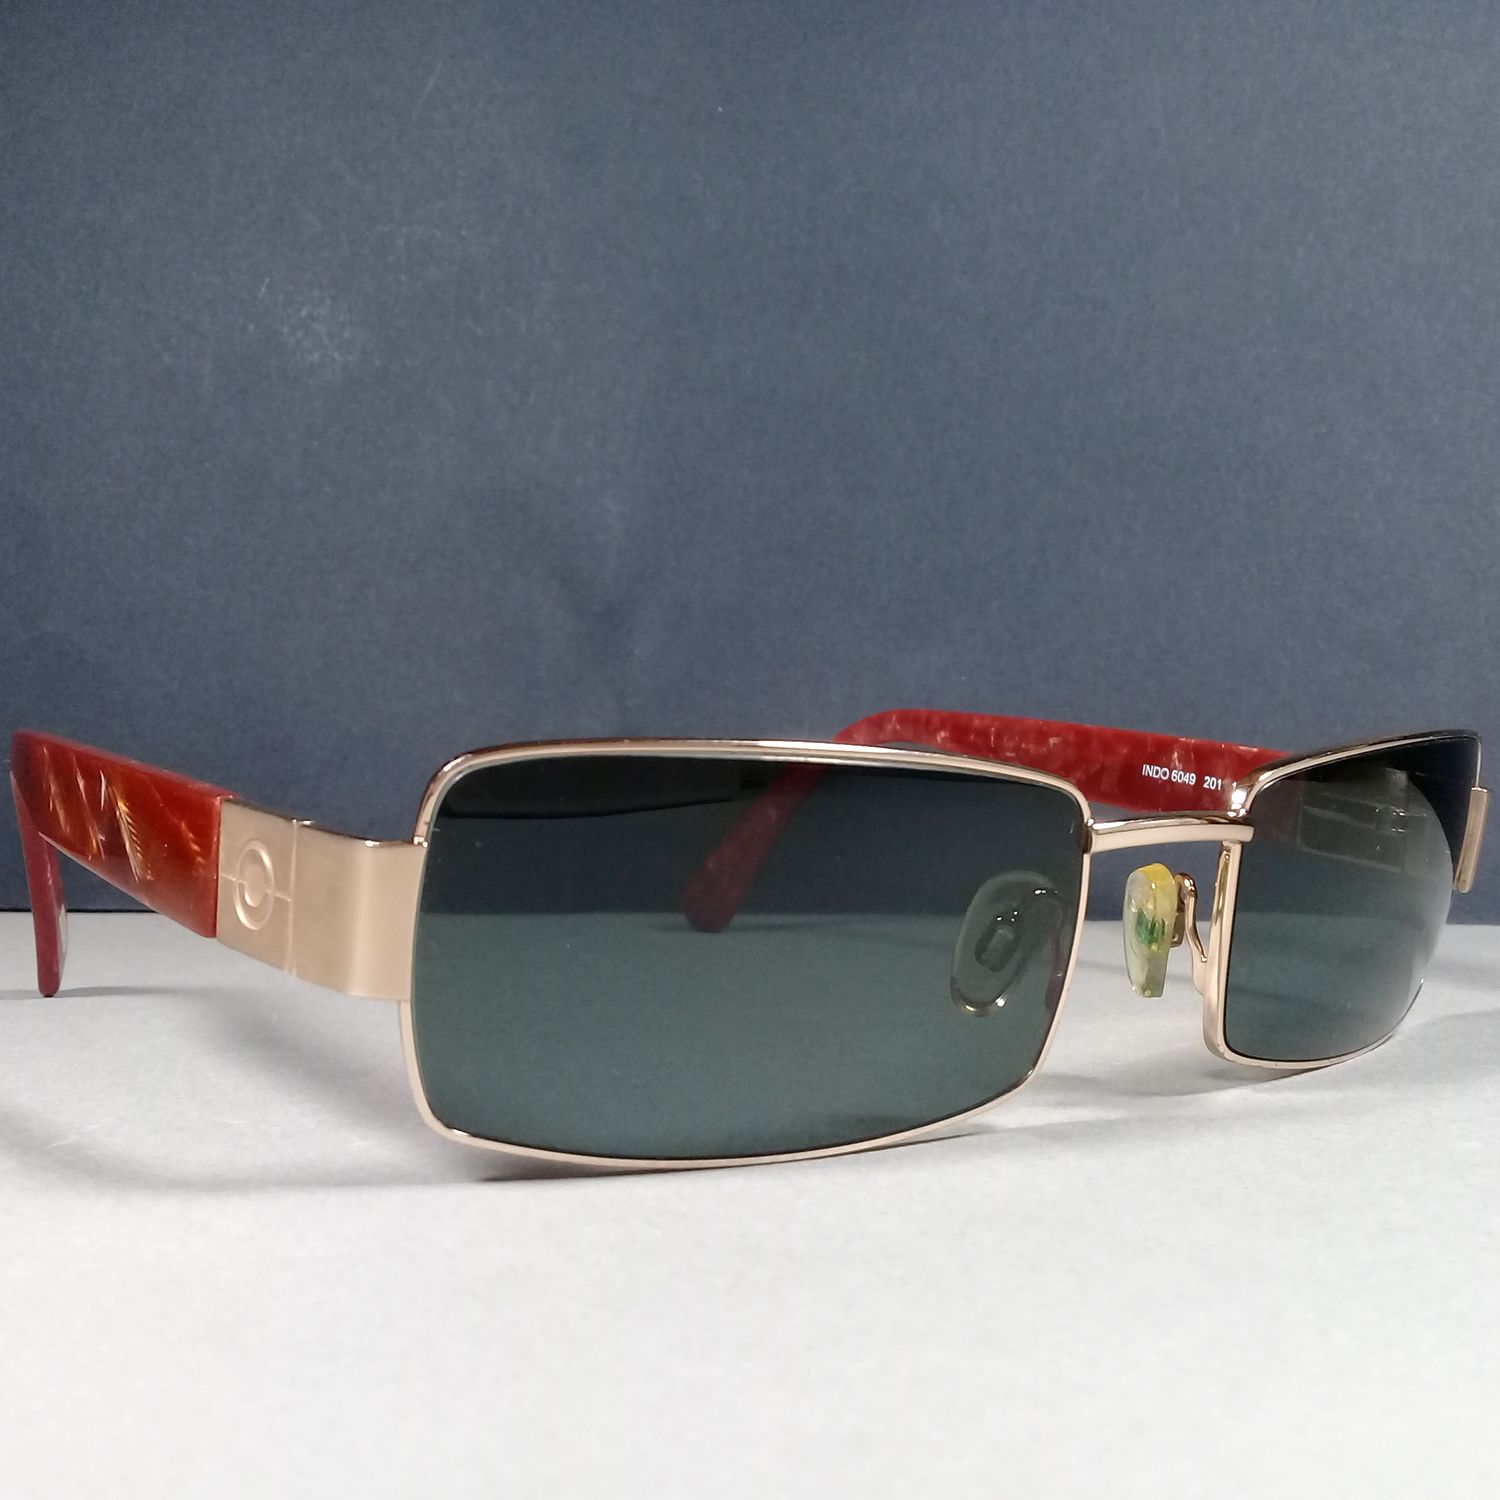 Indo 6049 201 135 Rectangular Unisex Sunglasses Made in Spain